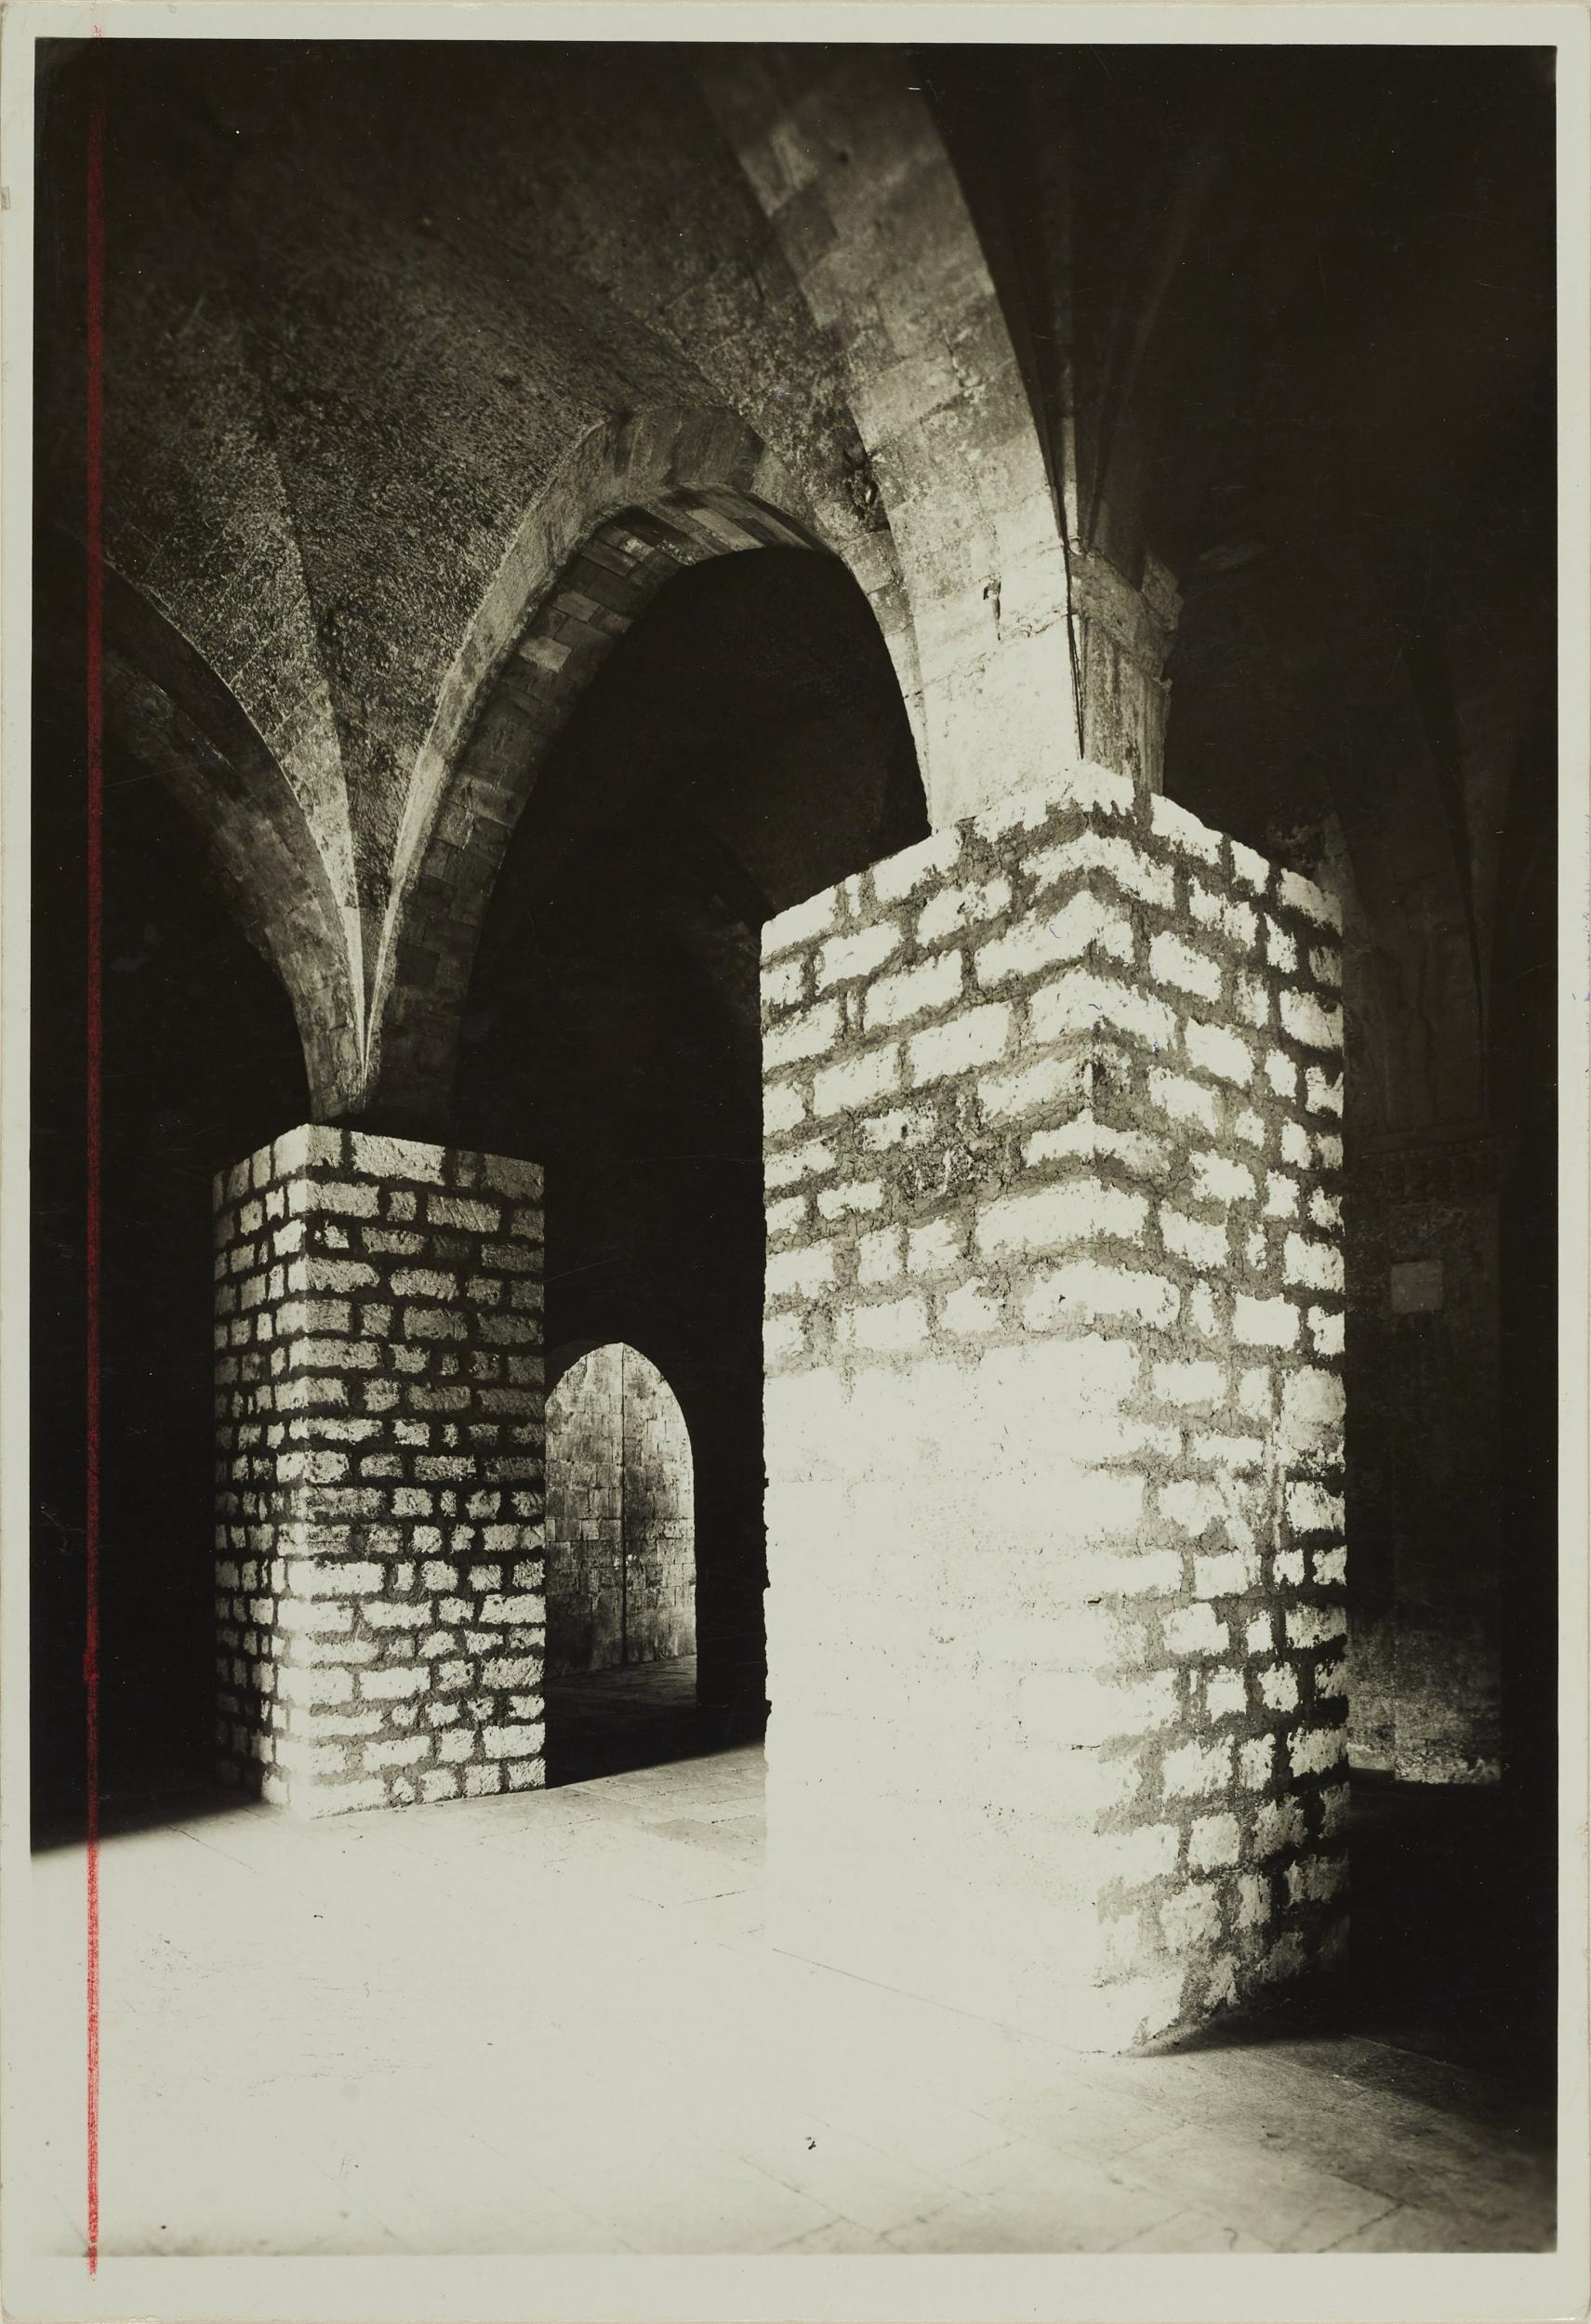 Fotografo non identificato, Bari - Castello, 1968, gelatina ai sali d'argento/carta, MPI6023074